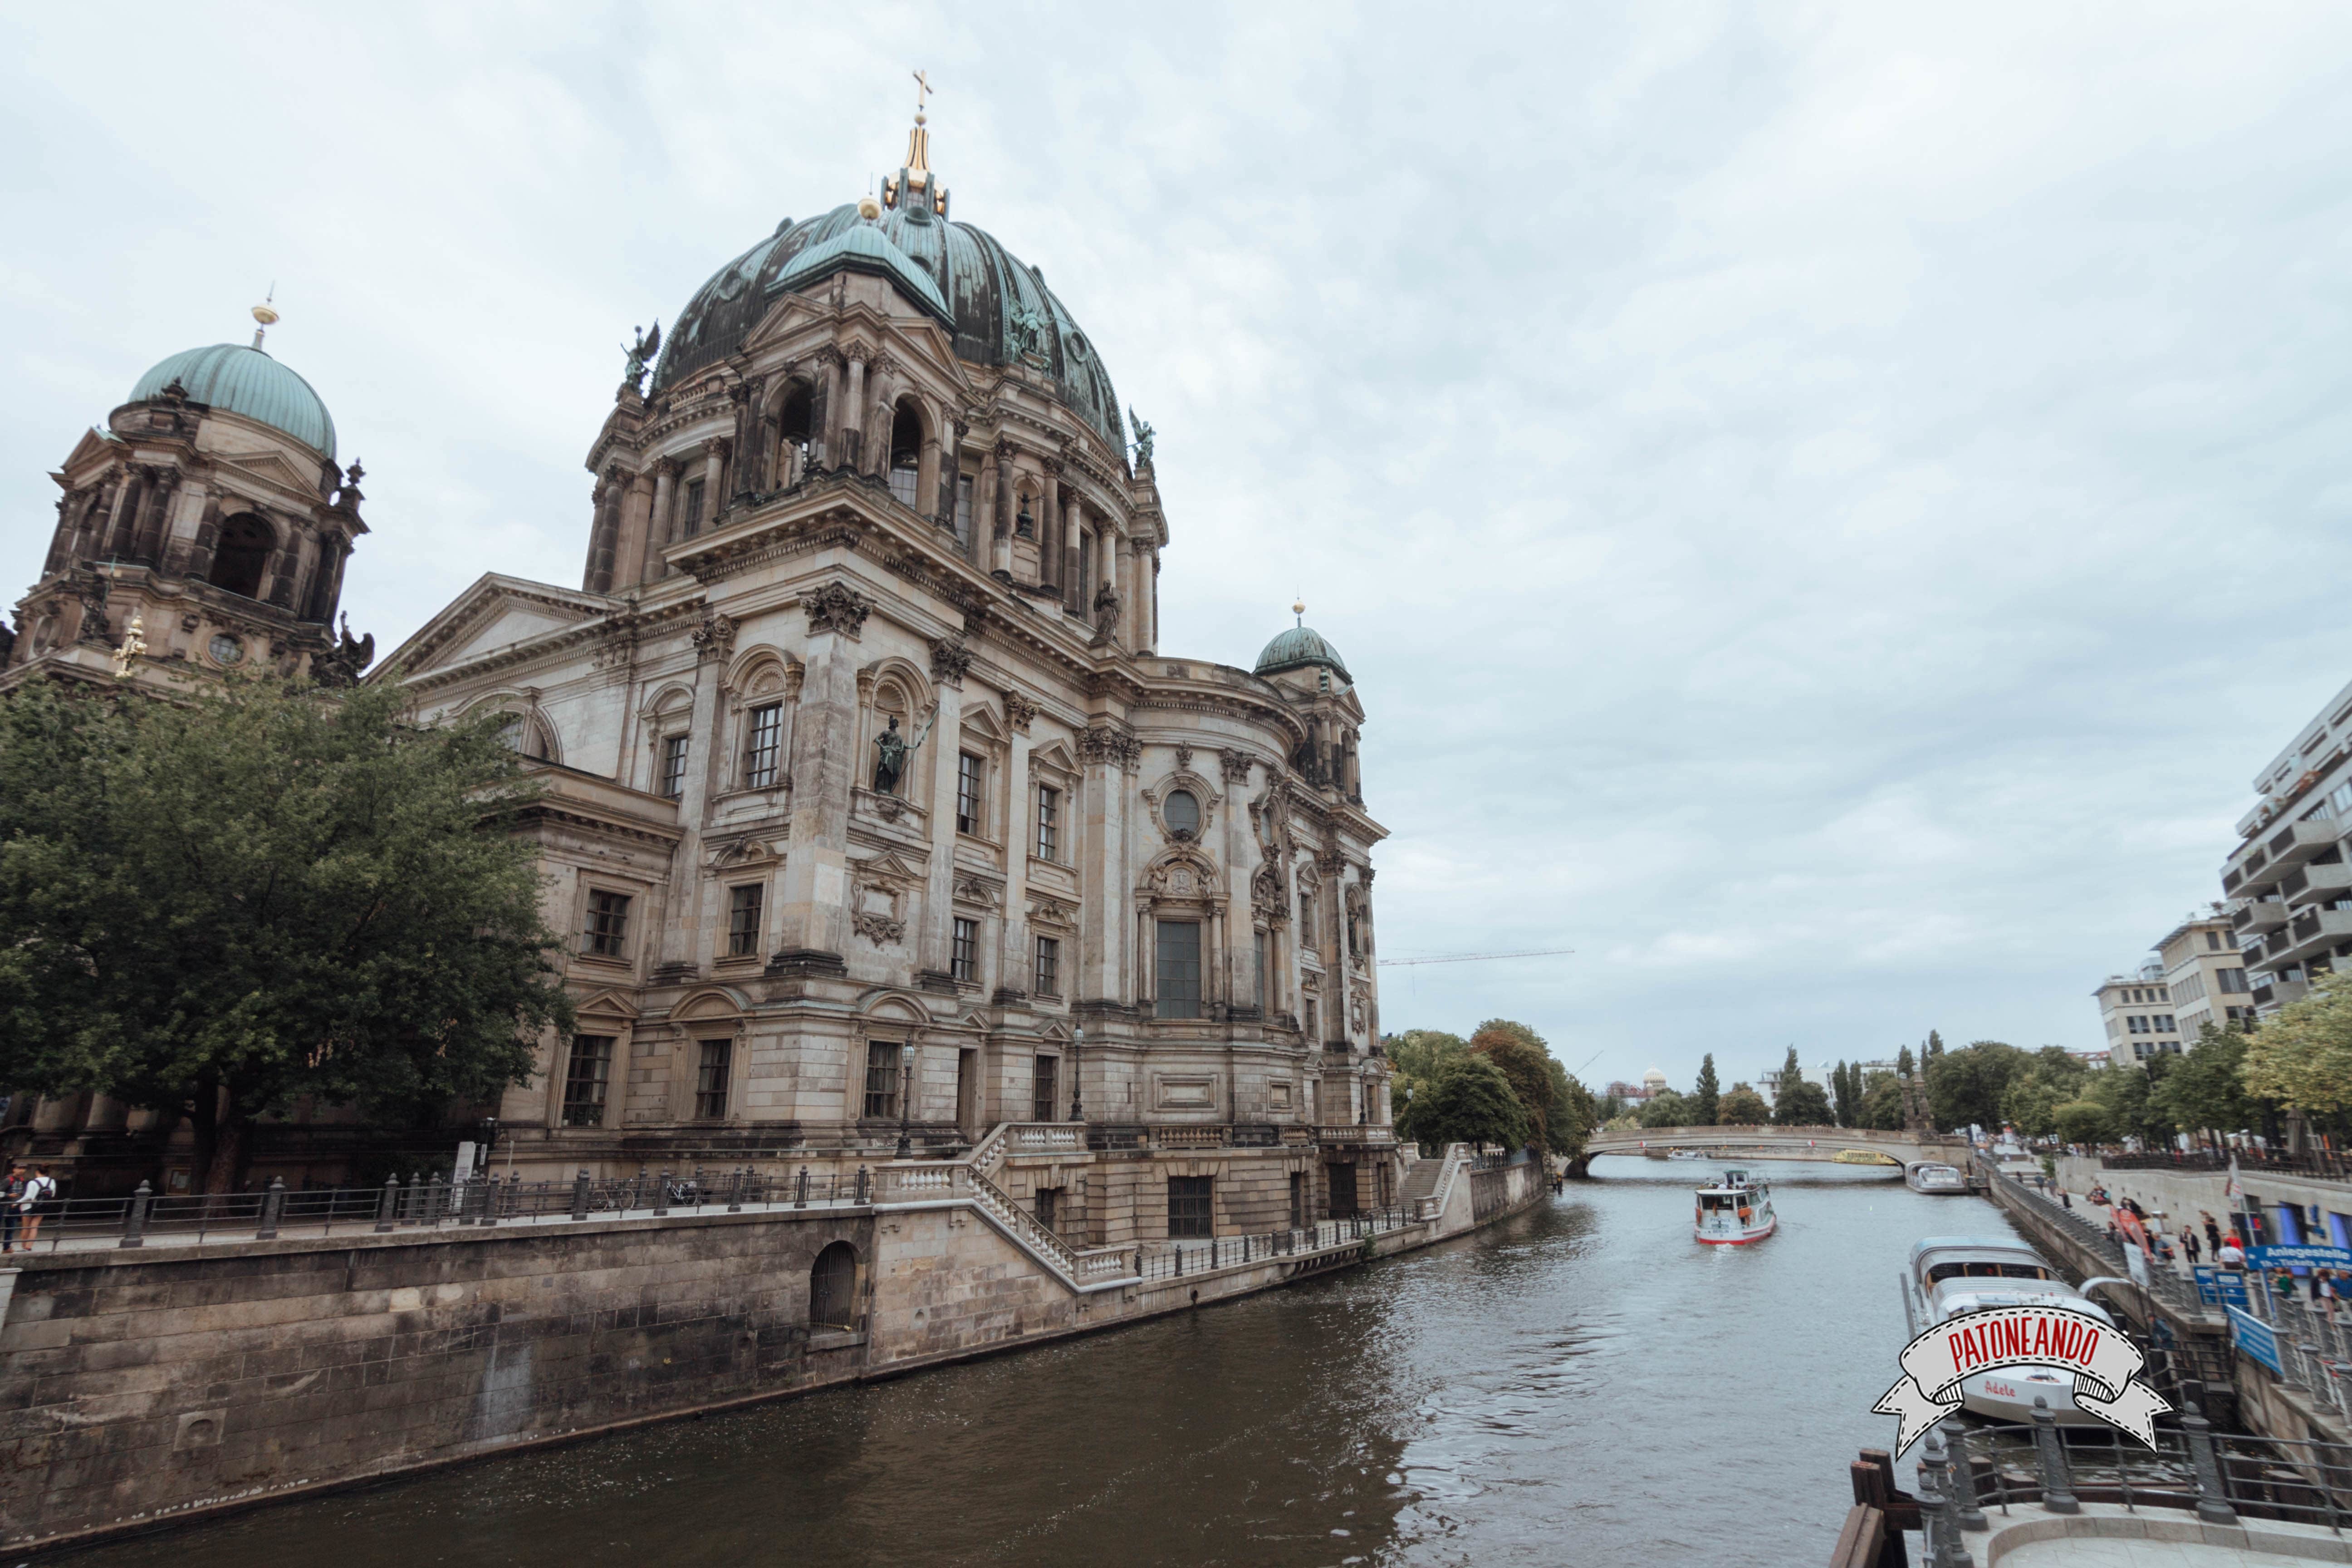 que ver y que hacer en Berlín - Catedral de Berlín , Berliner Dom -Patoneando blog de viajes (11)